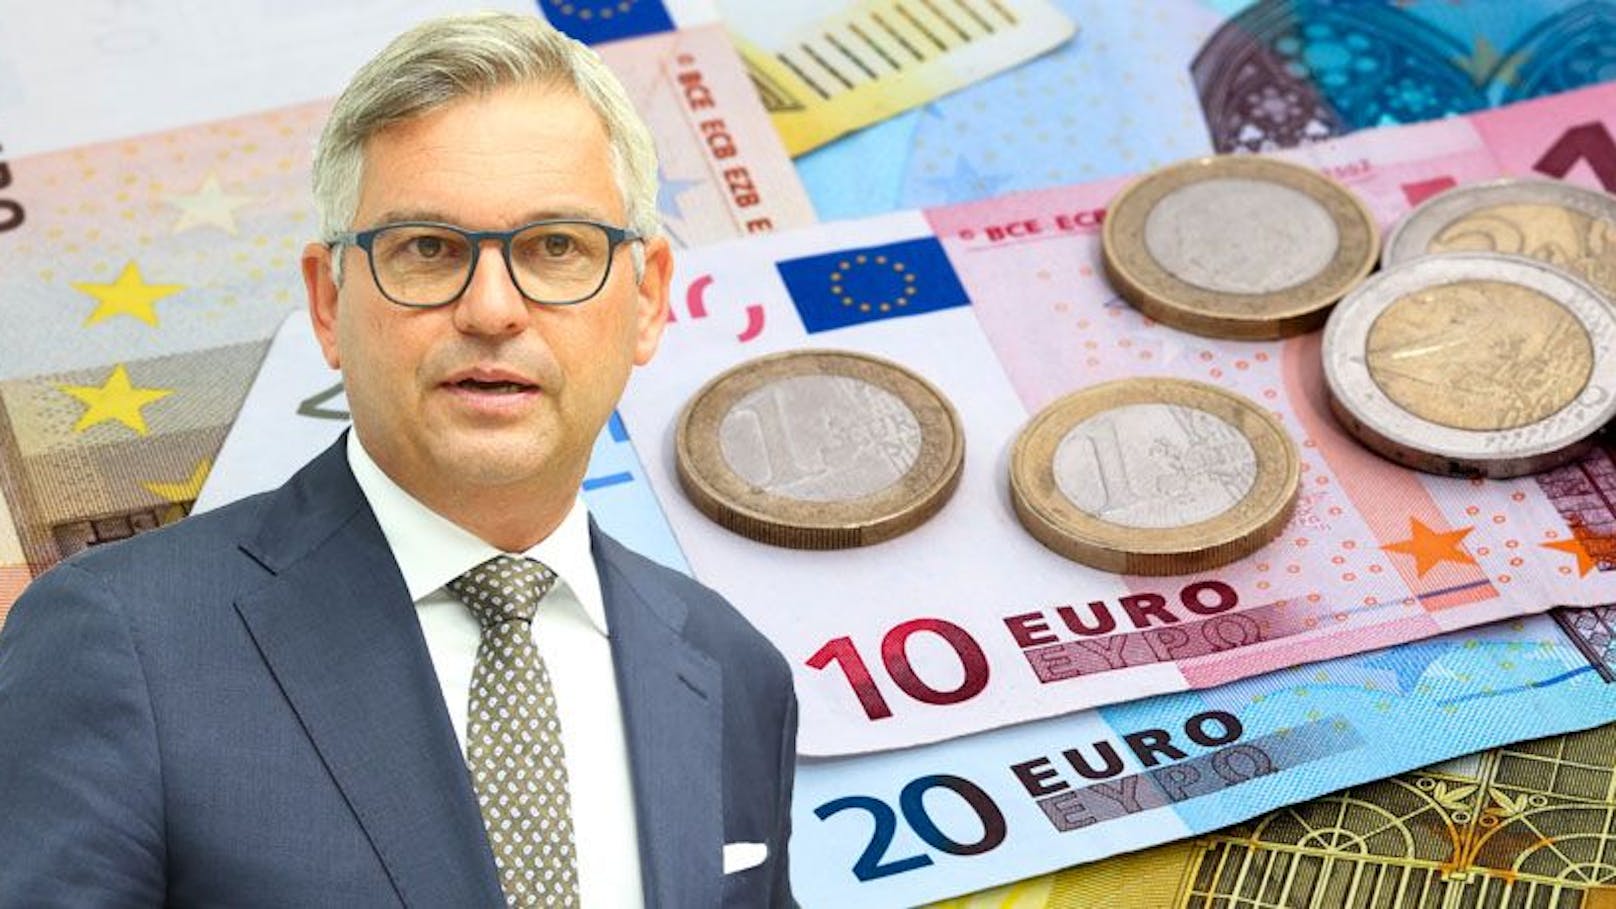 Neuer 100.000 €-Bonus für Minister "nicht sinnvoll"